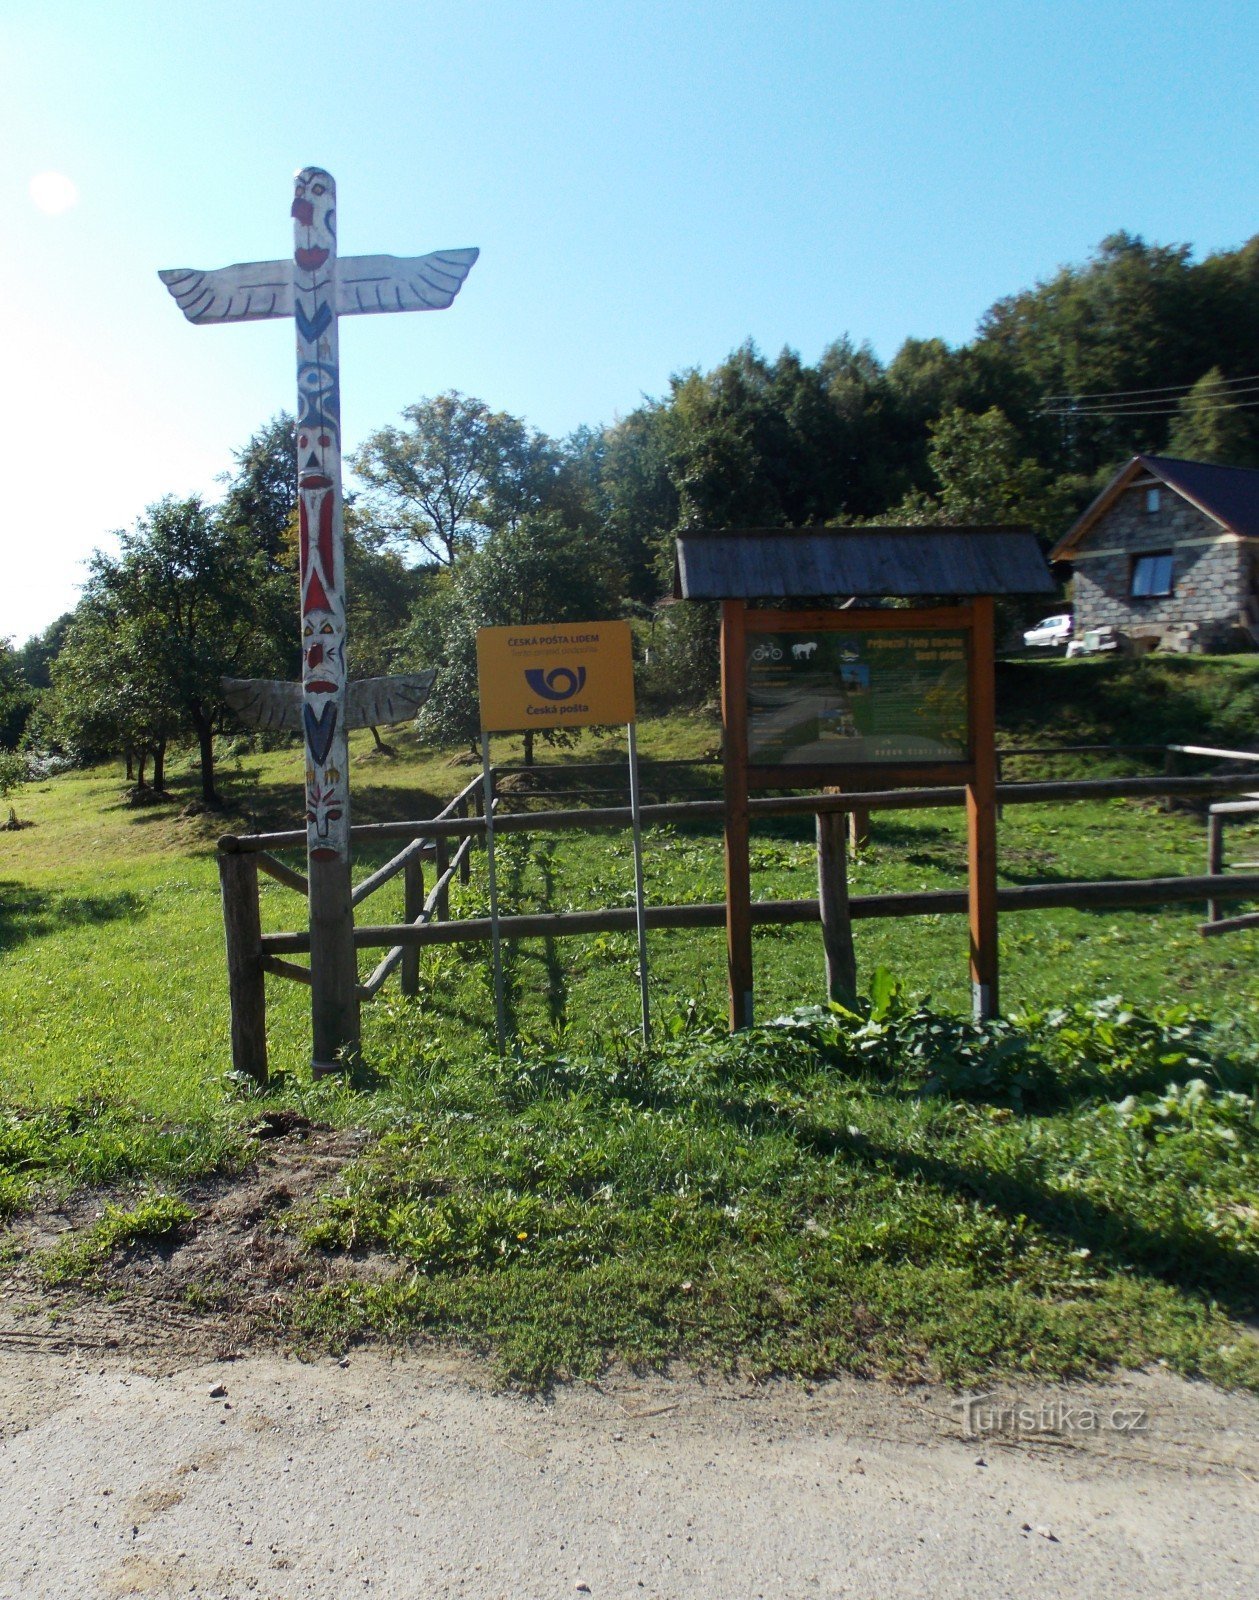 Đi bộ mùa hè ở làng Prlov